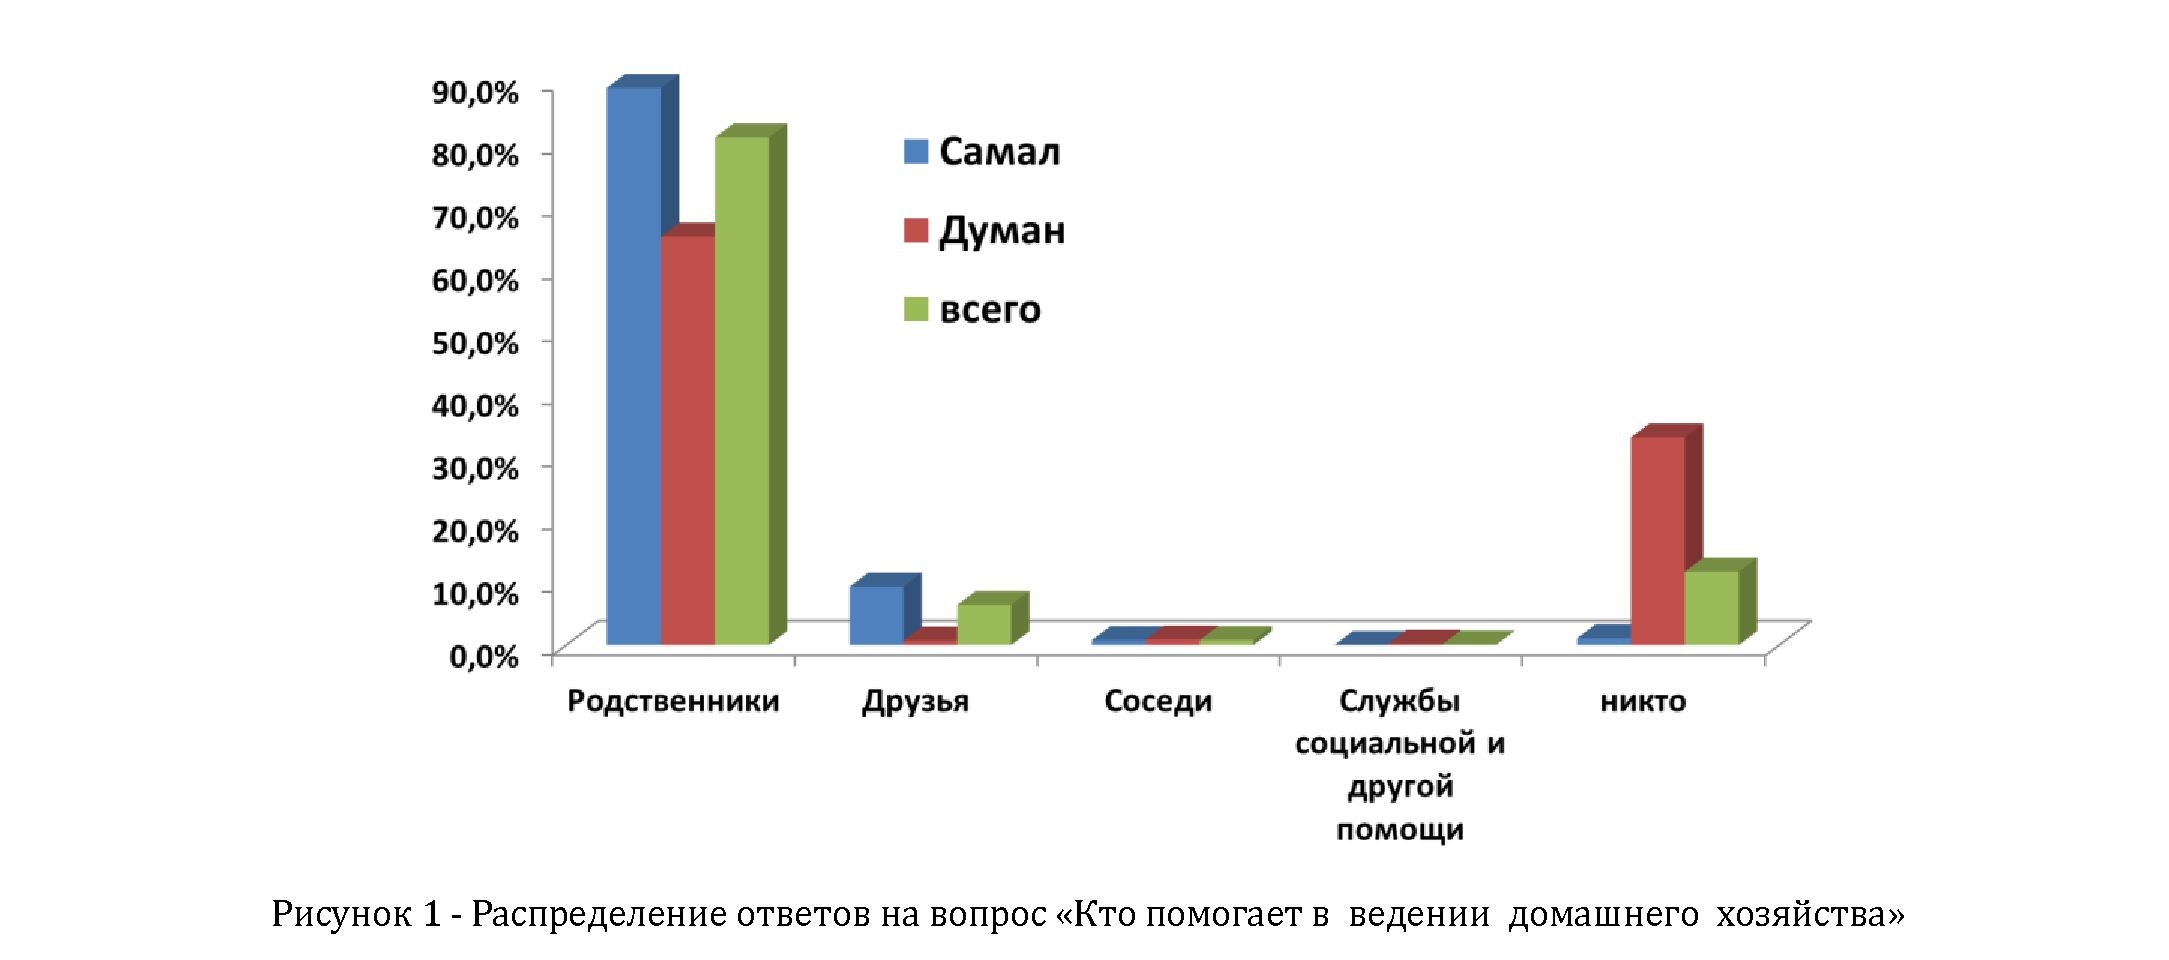 Результаты социологического опроса лиц старше 60 лет, проживающих в Медеуском районе г. Алматы